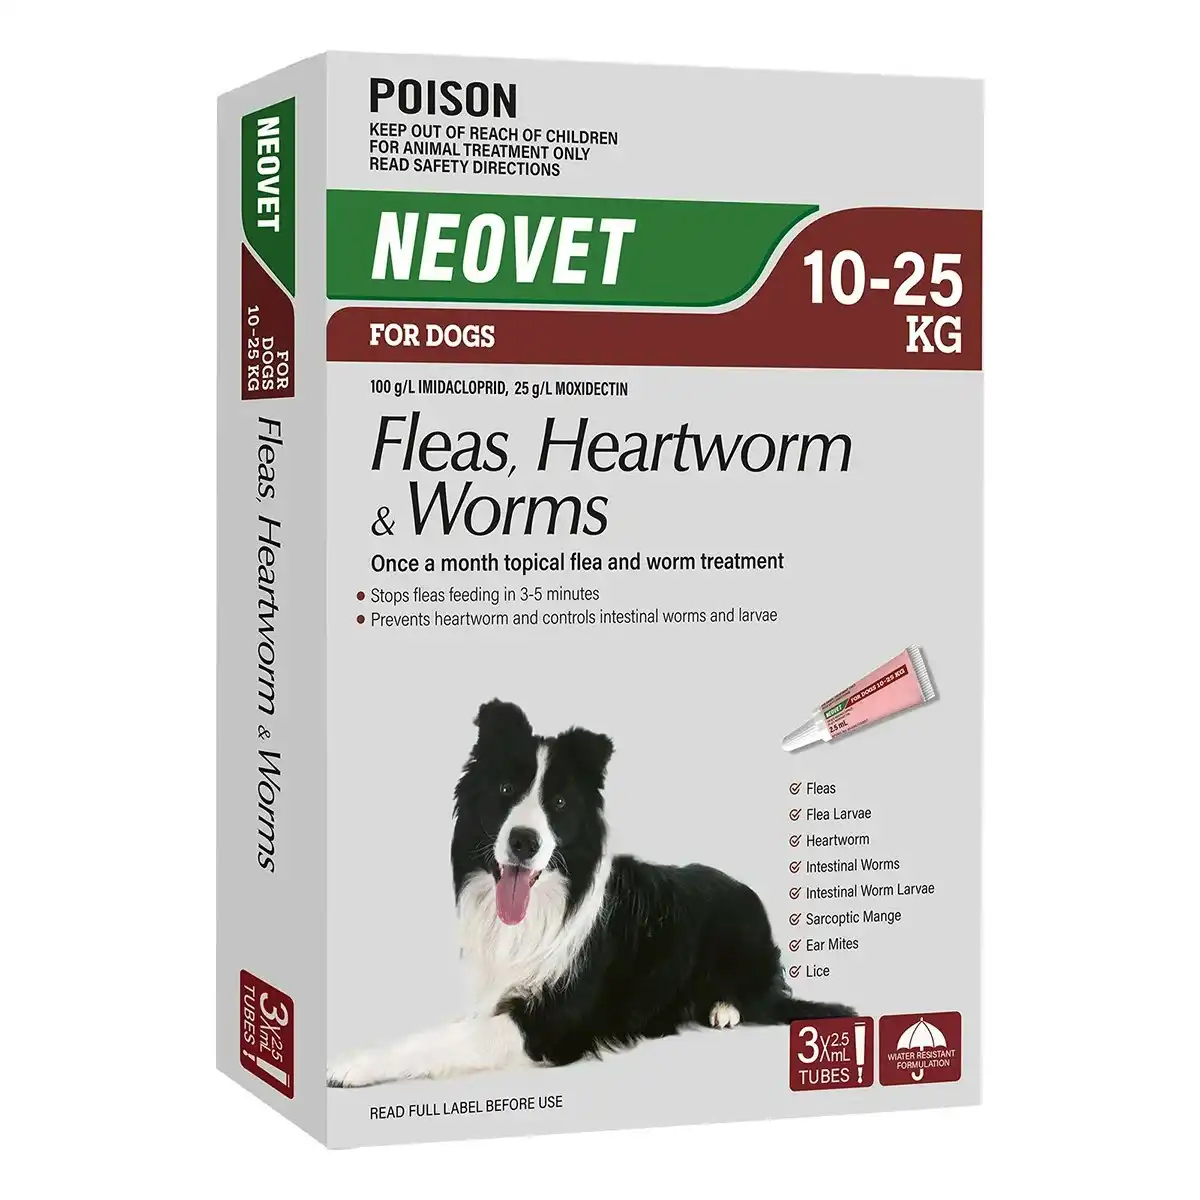 Neovet for Medium Dogs 10-25kg (Red)